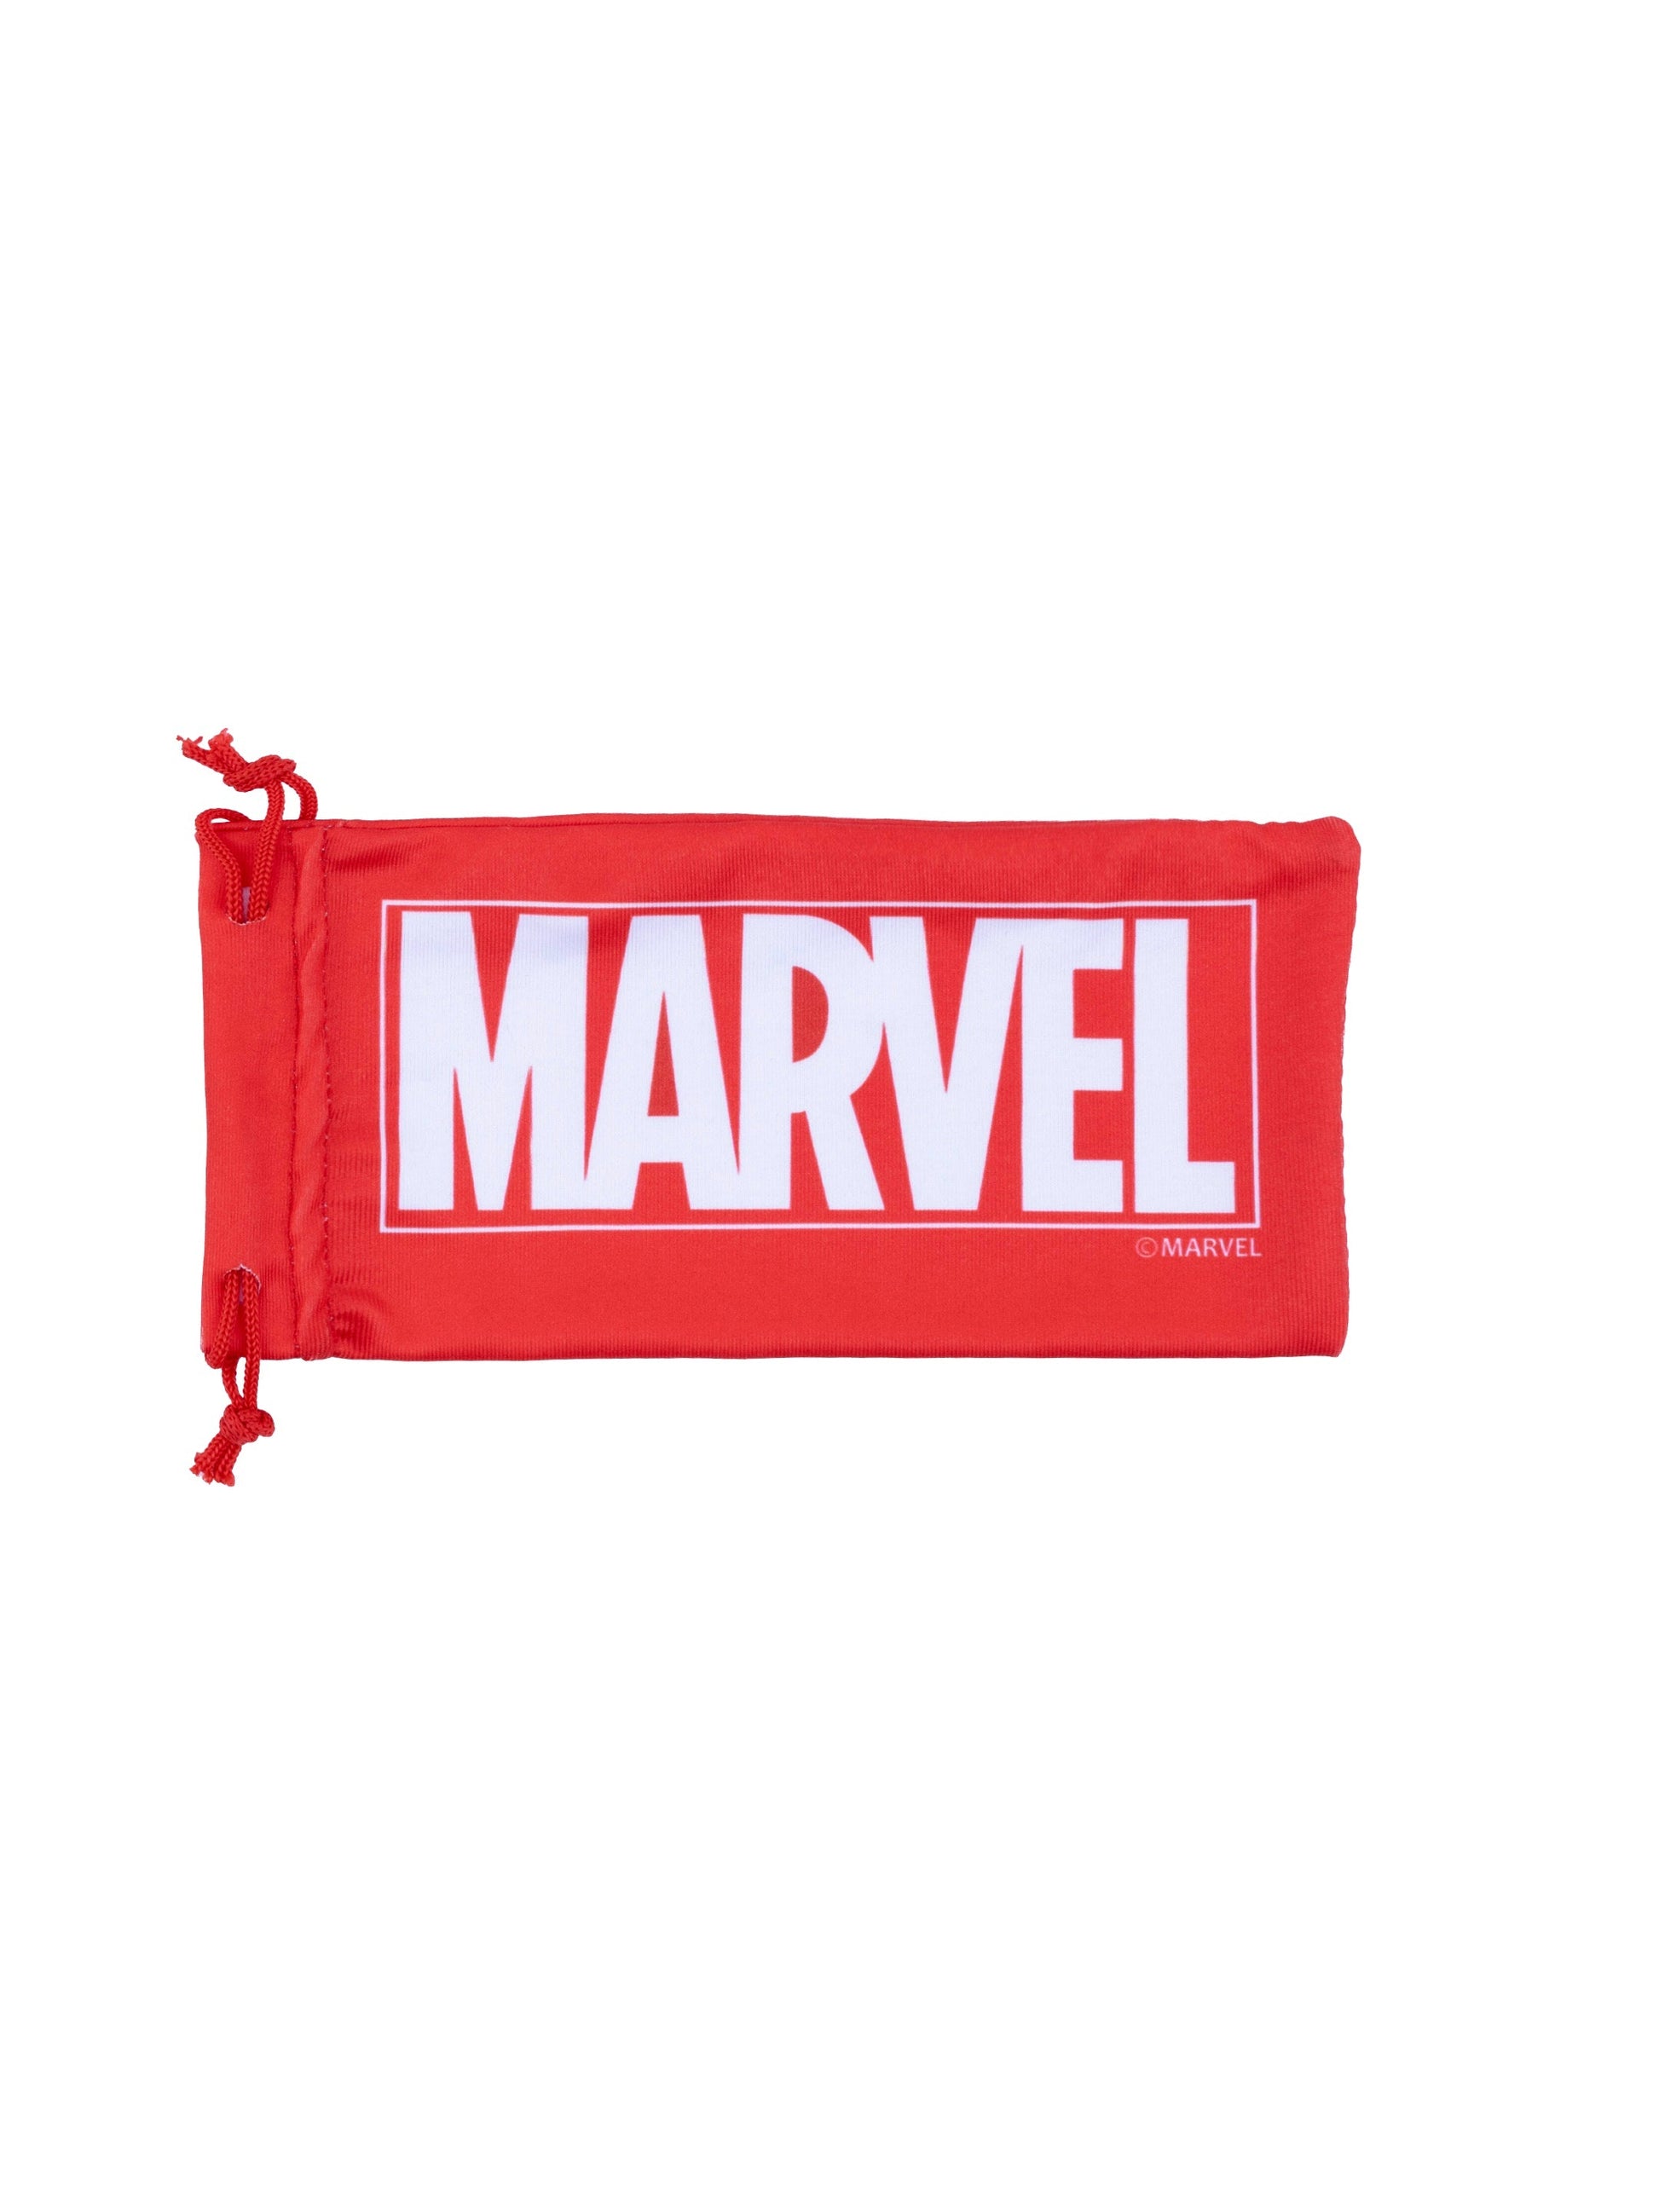 Marvel Avengers Sunglasses - Toys4All.in